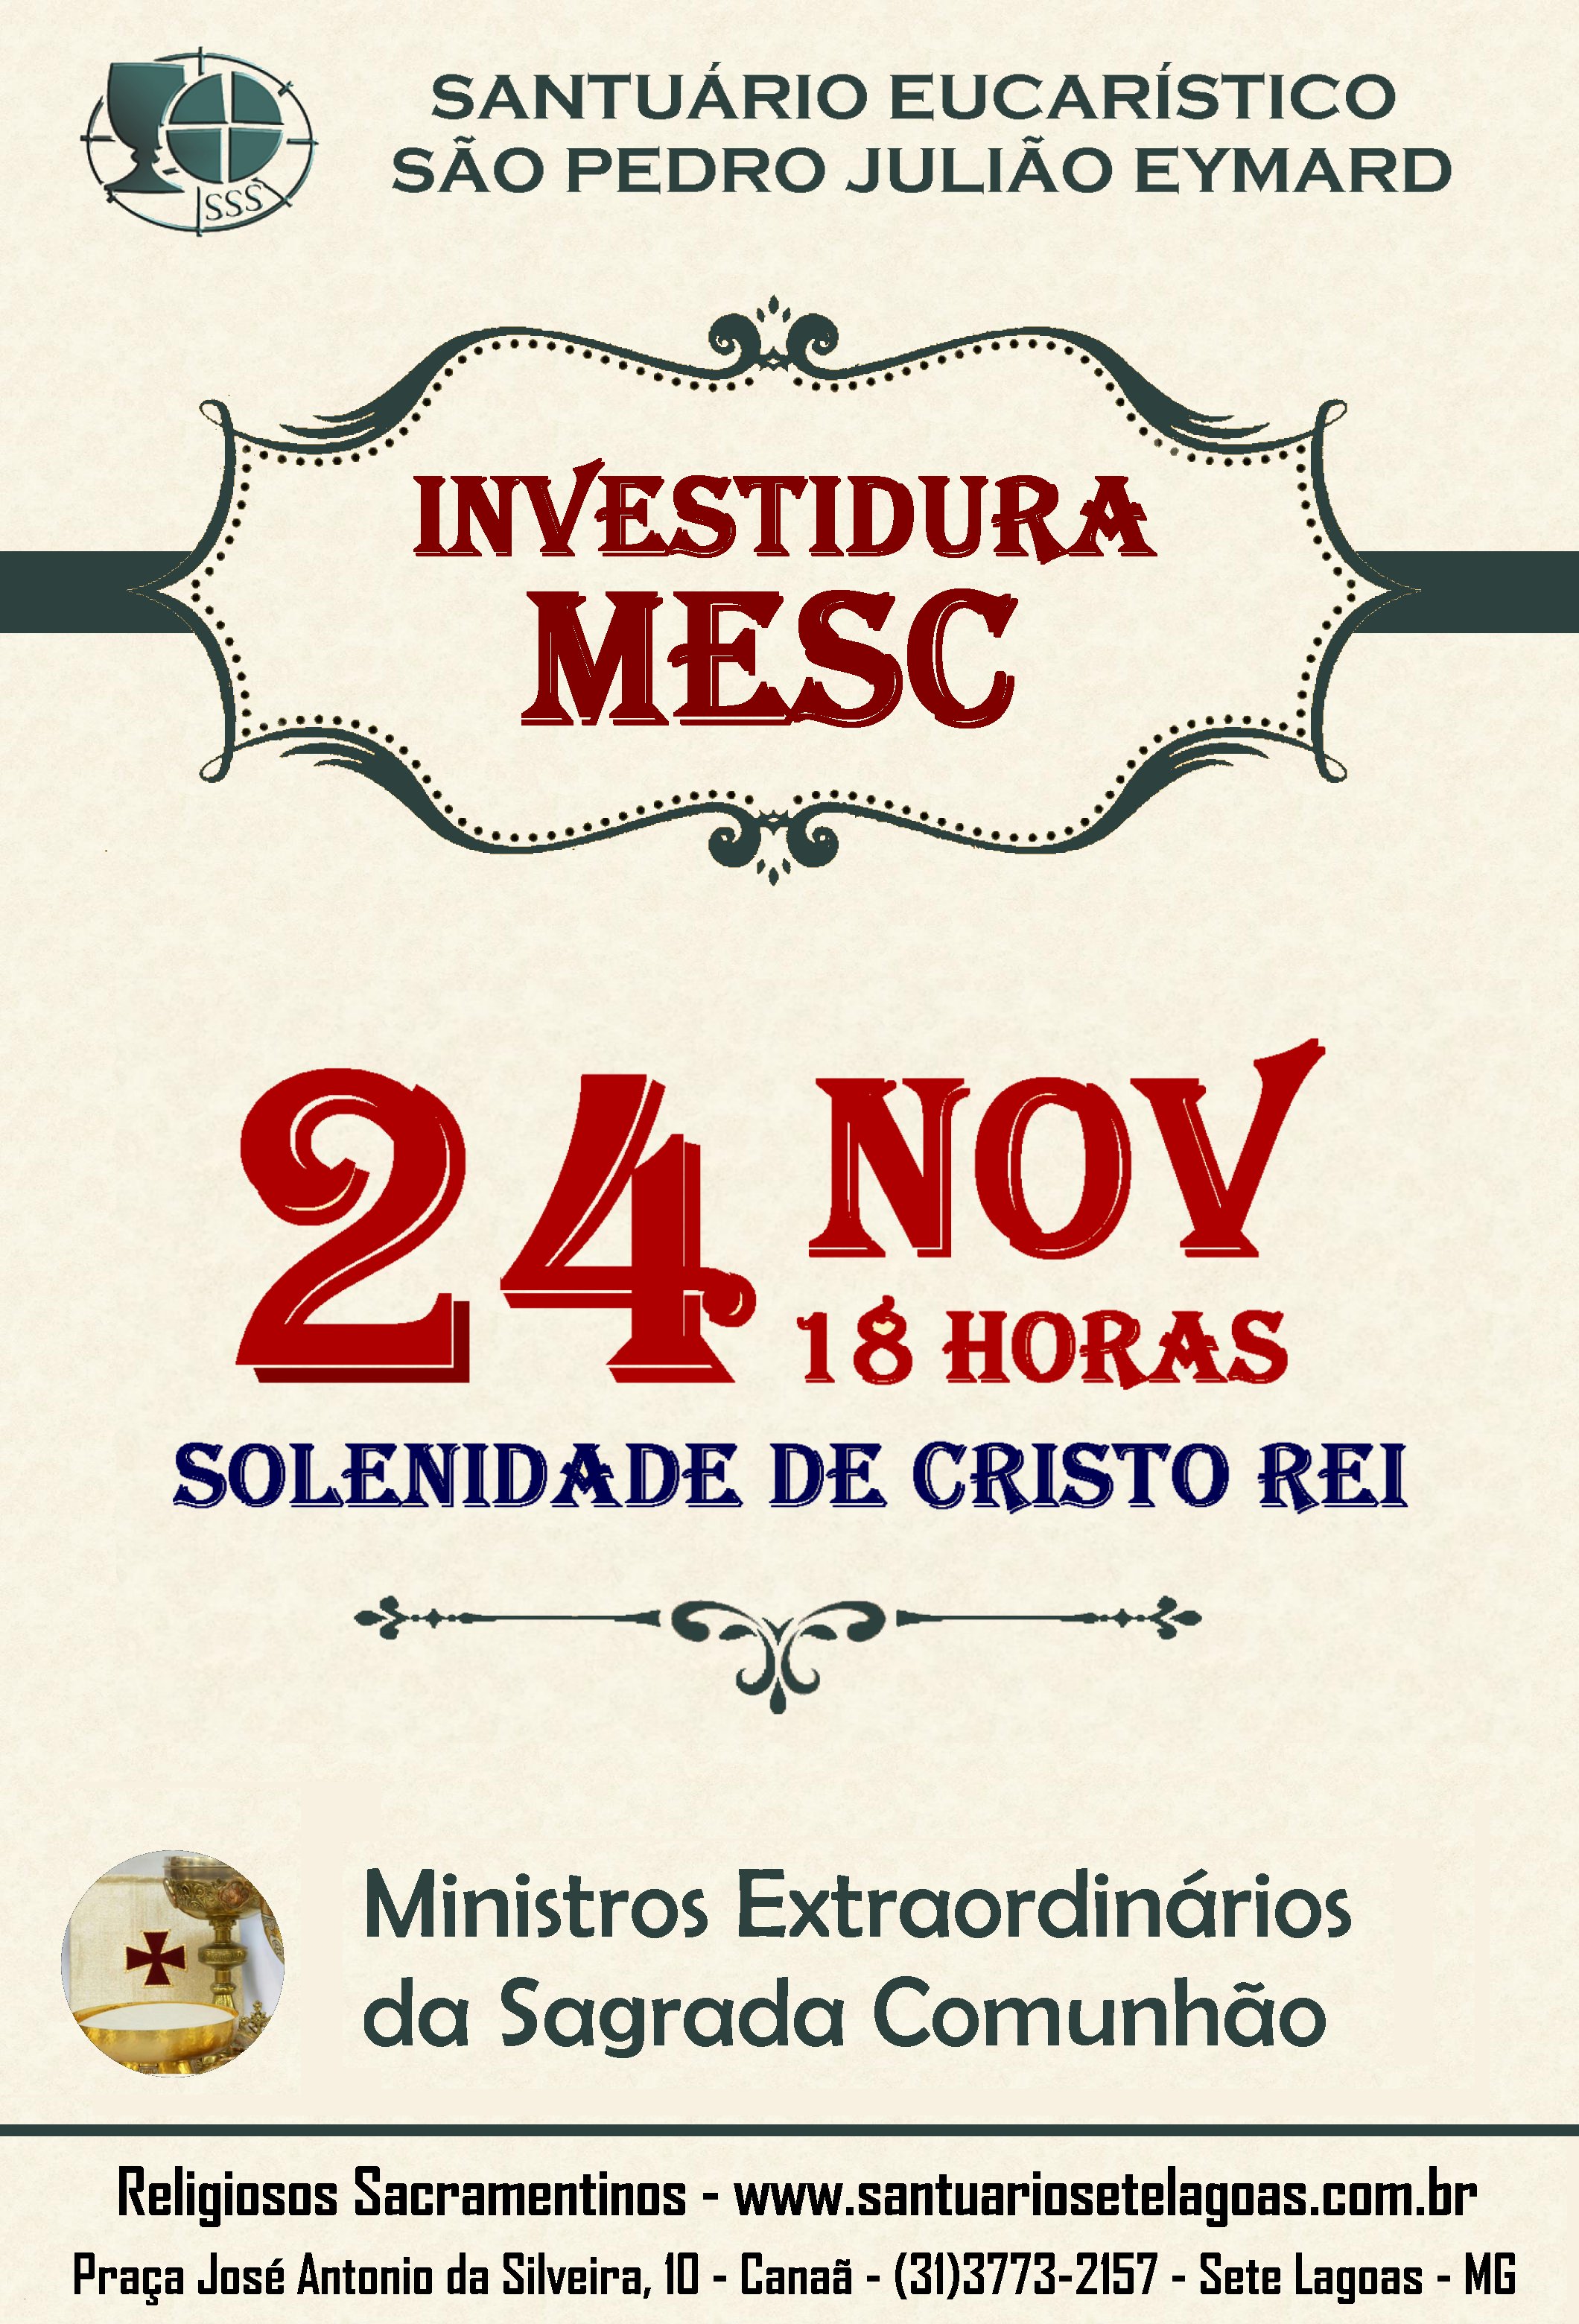 Investidura de novos Ministros Extraordinários da Sagrada Comunhão – MESC dia 24/11